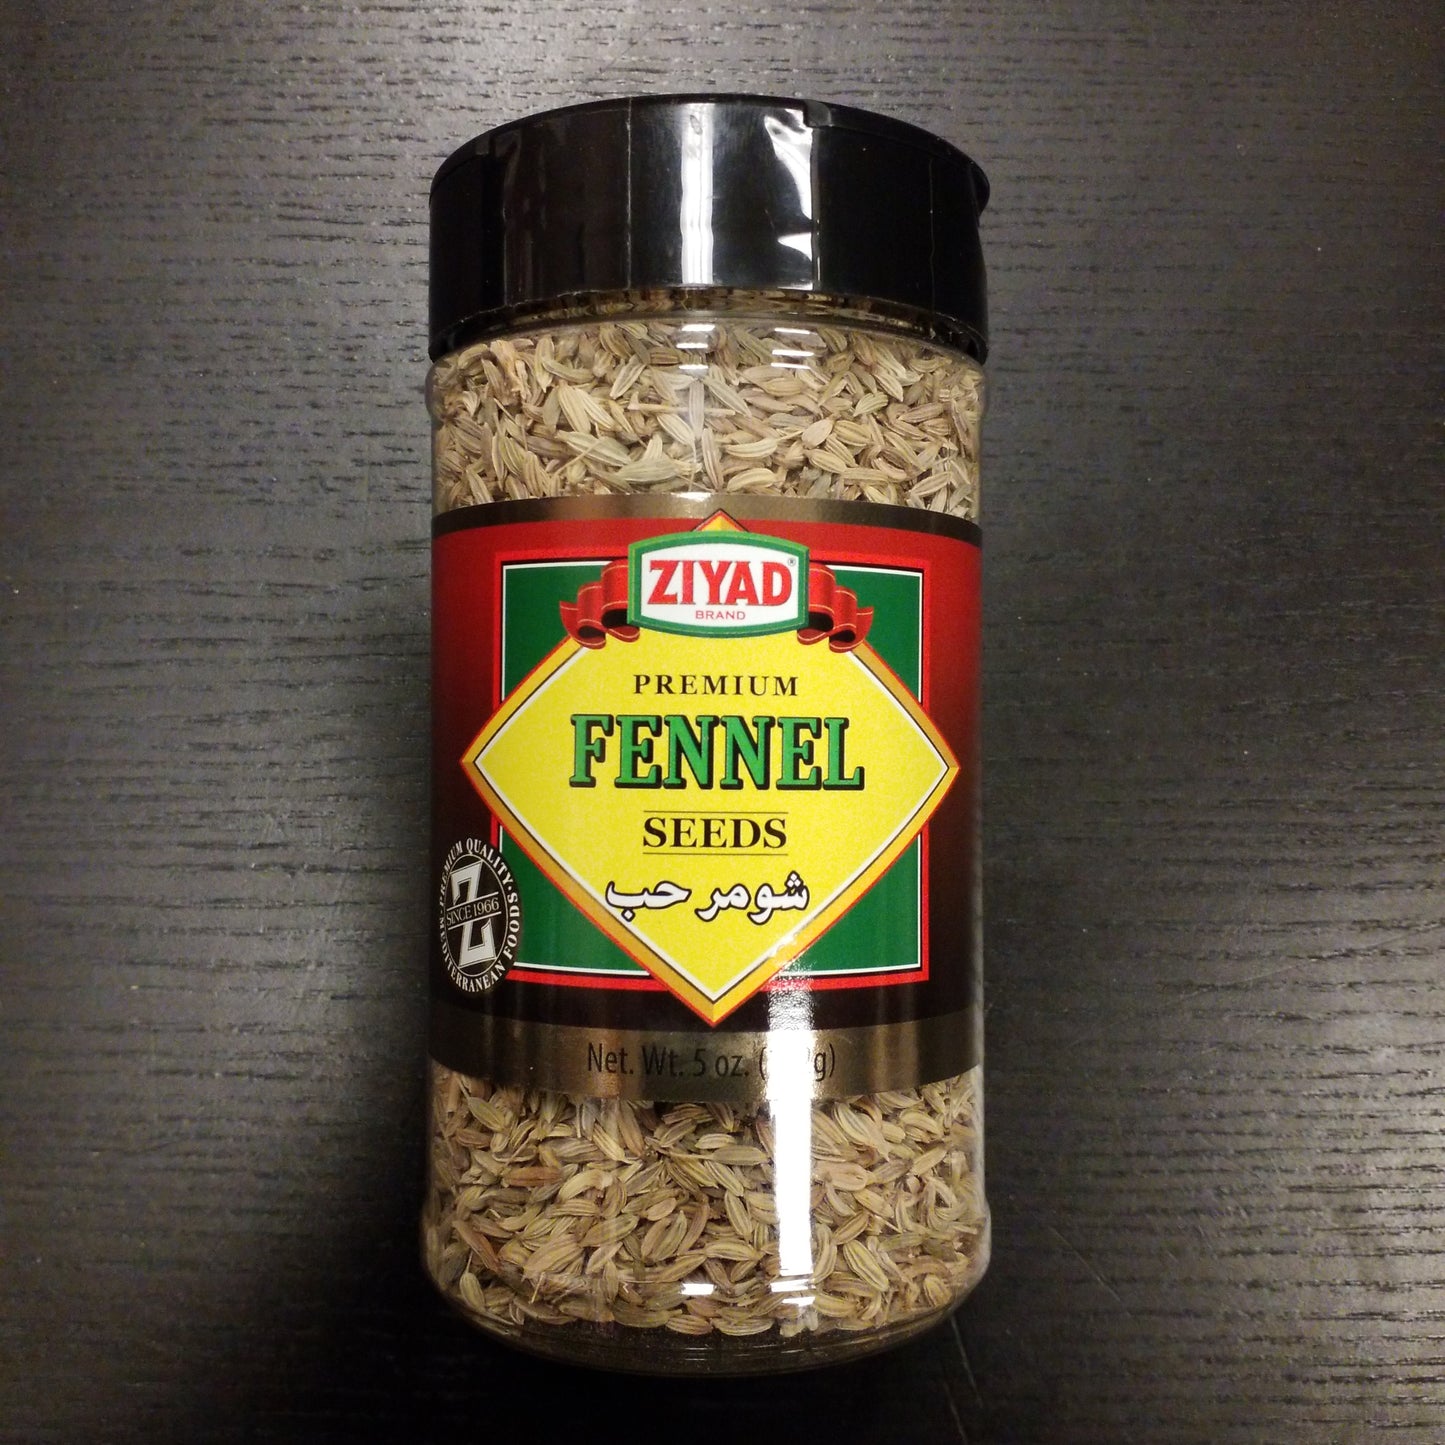 Ziyad premium Fennel seeds